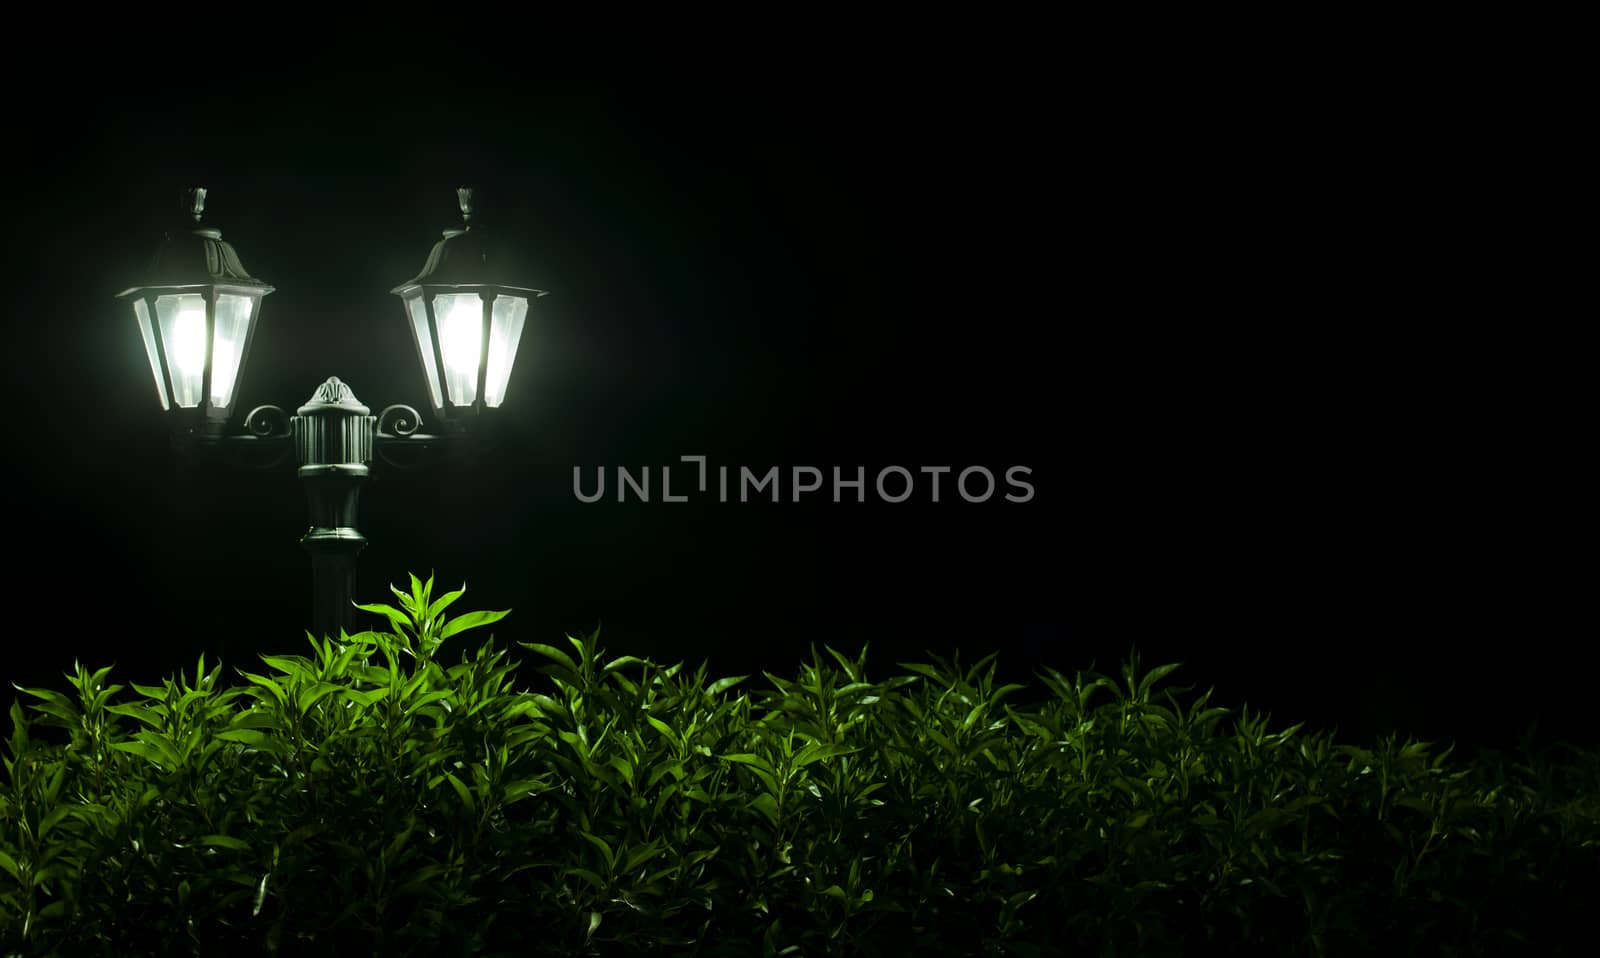 Outdoor Night lamp in park. Night light